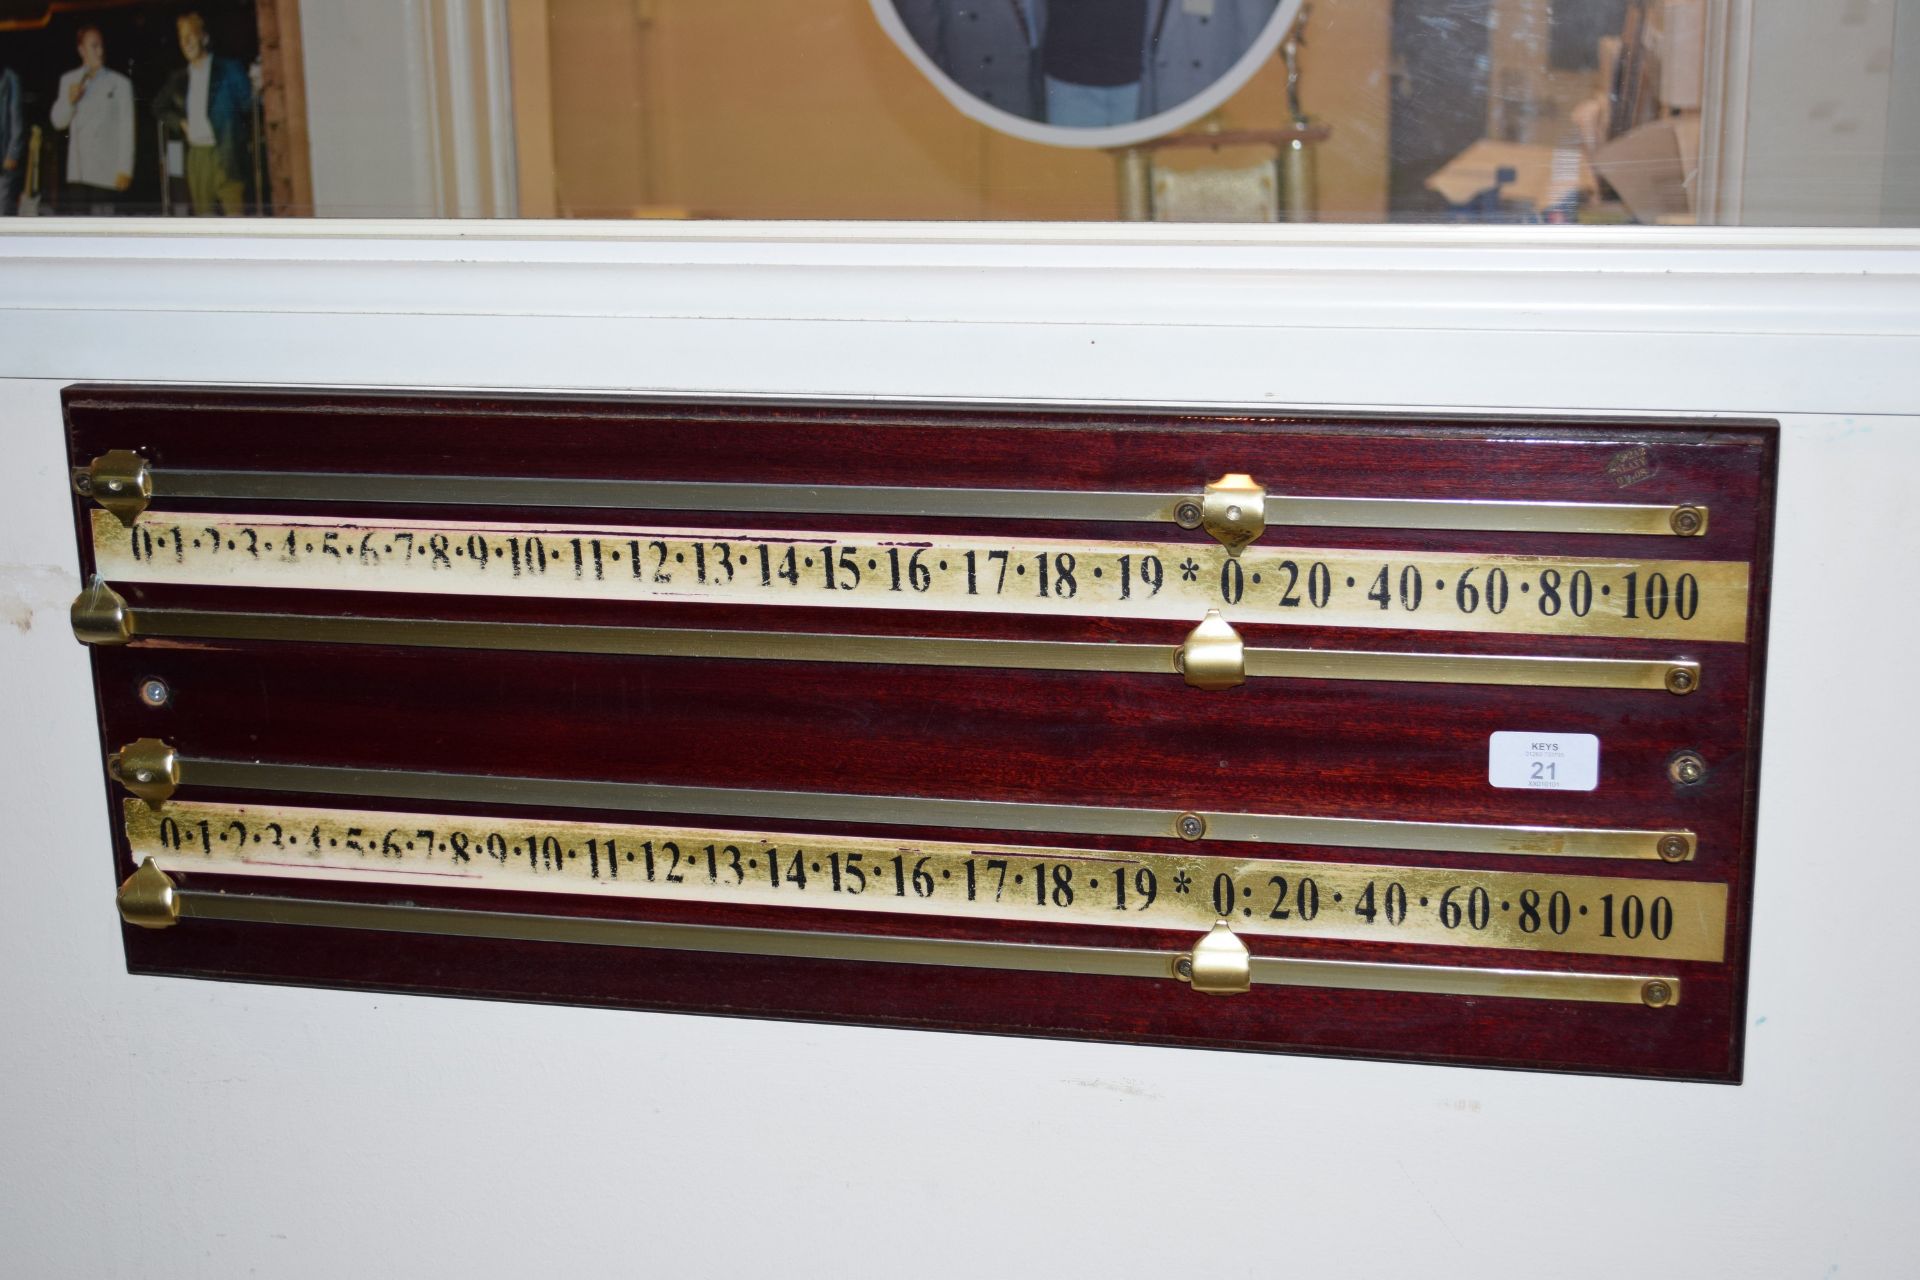 Snooker score board width approx 65cm